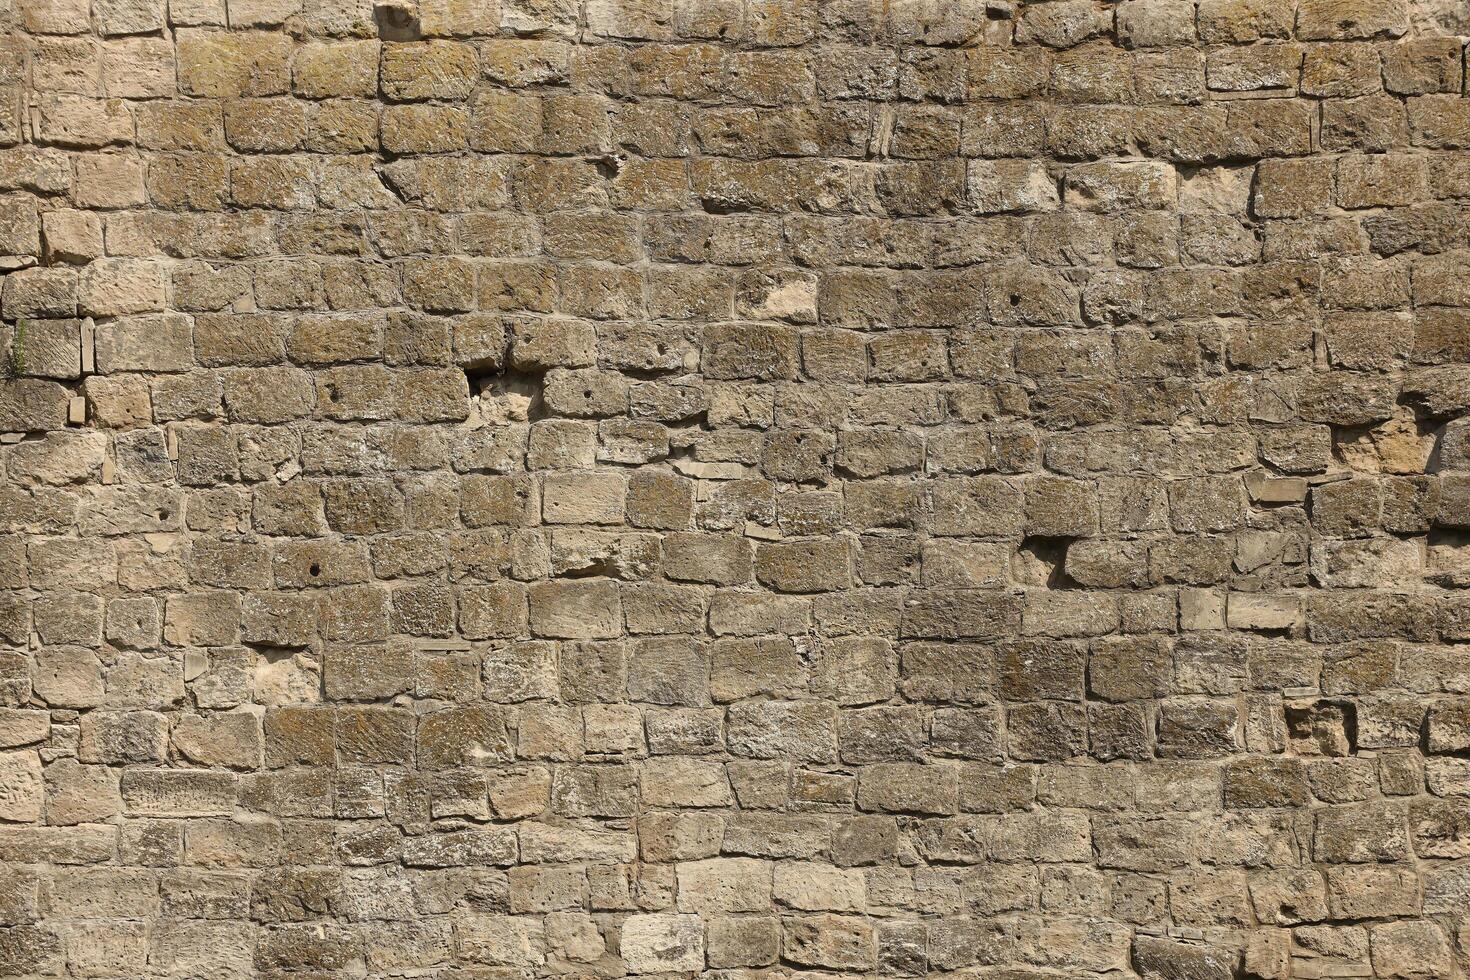 muito velho tijolo pedra parede do castelo ou fortaleza do 18º século. cheio quadro, Armação parede com obsoleto sujo e rachado tijolos foto